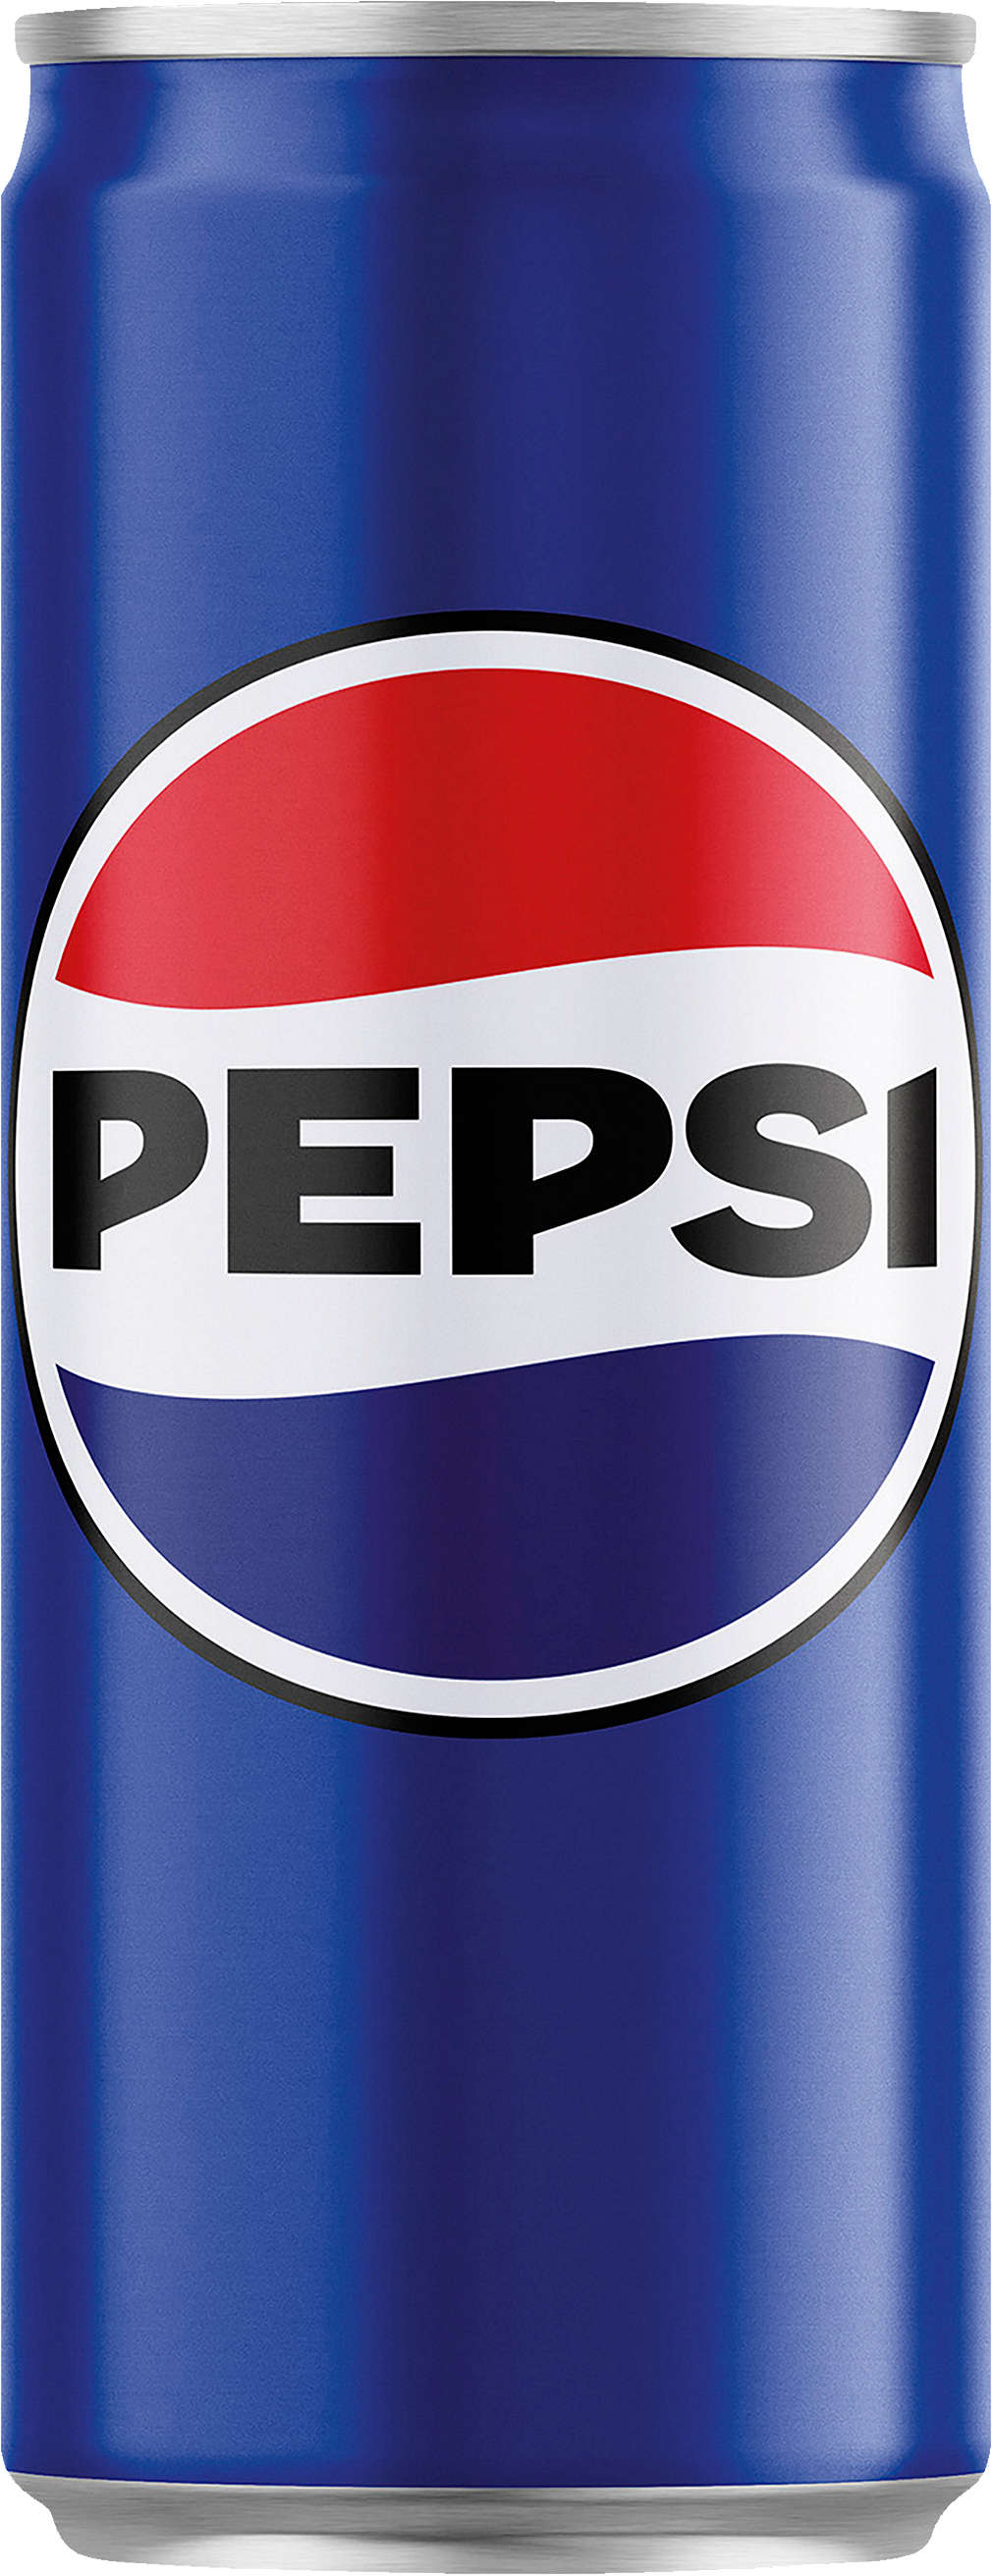 Zobrazit nabídku Pepsi Limonáda různé druhy